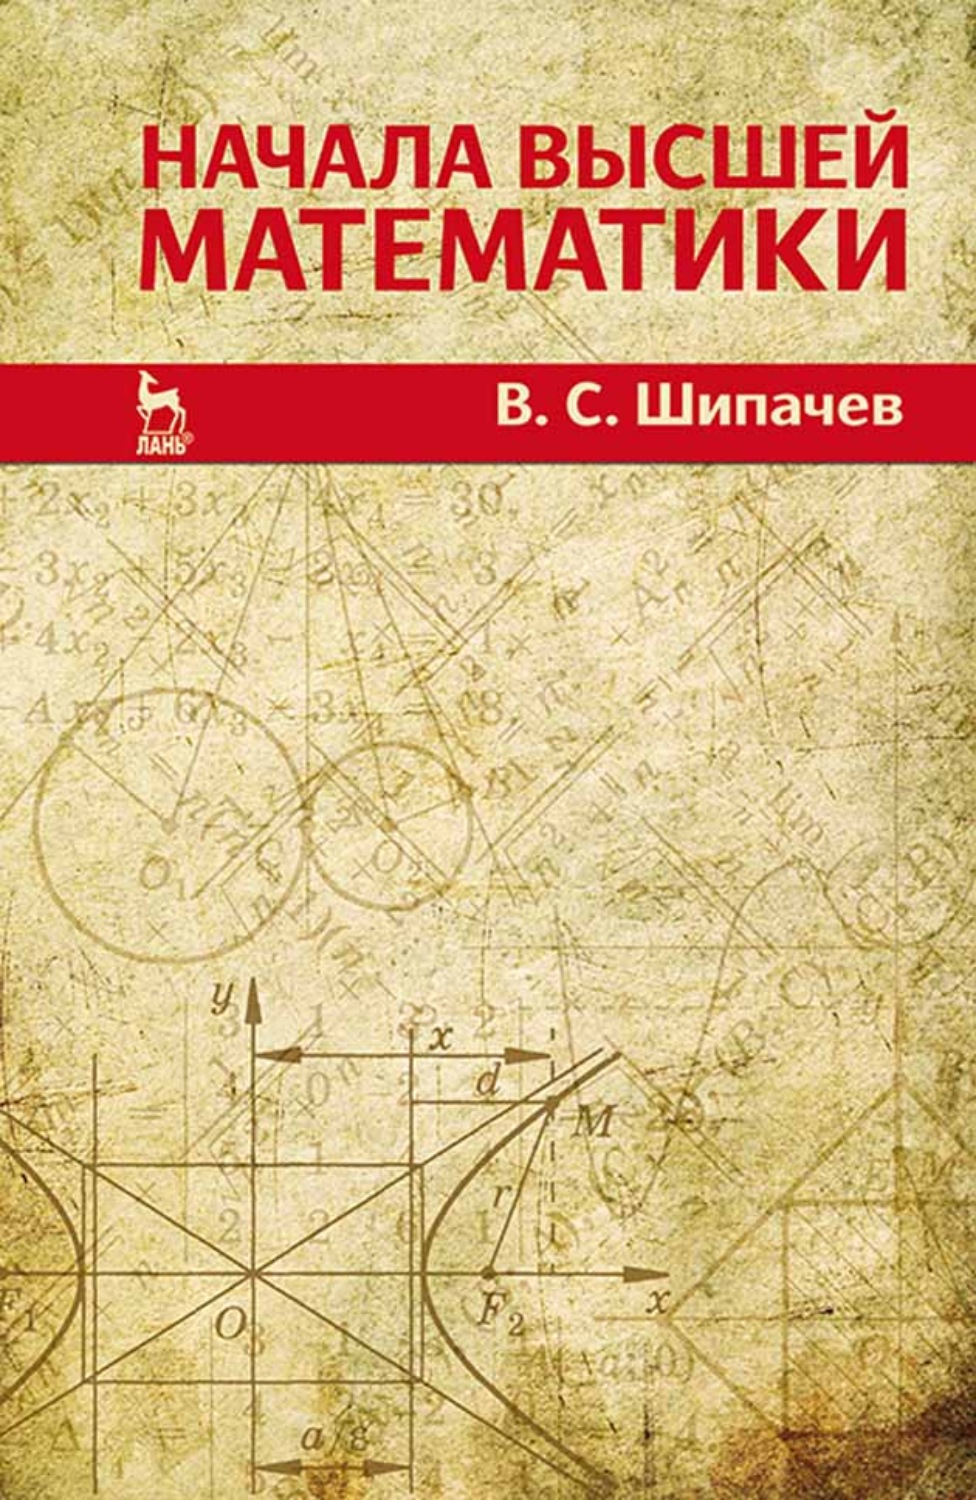 М в высшей математике. Книга математика. Обложка книги по математике. Обложки книги Высшая математика. Обложка для книши по матемаьике.